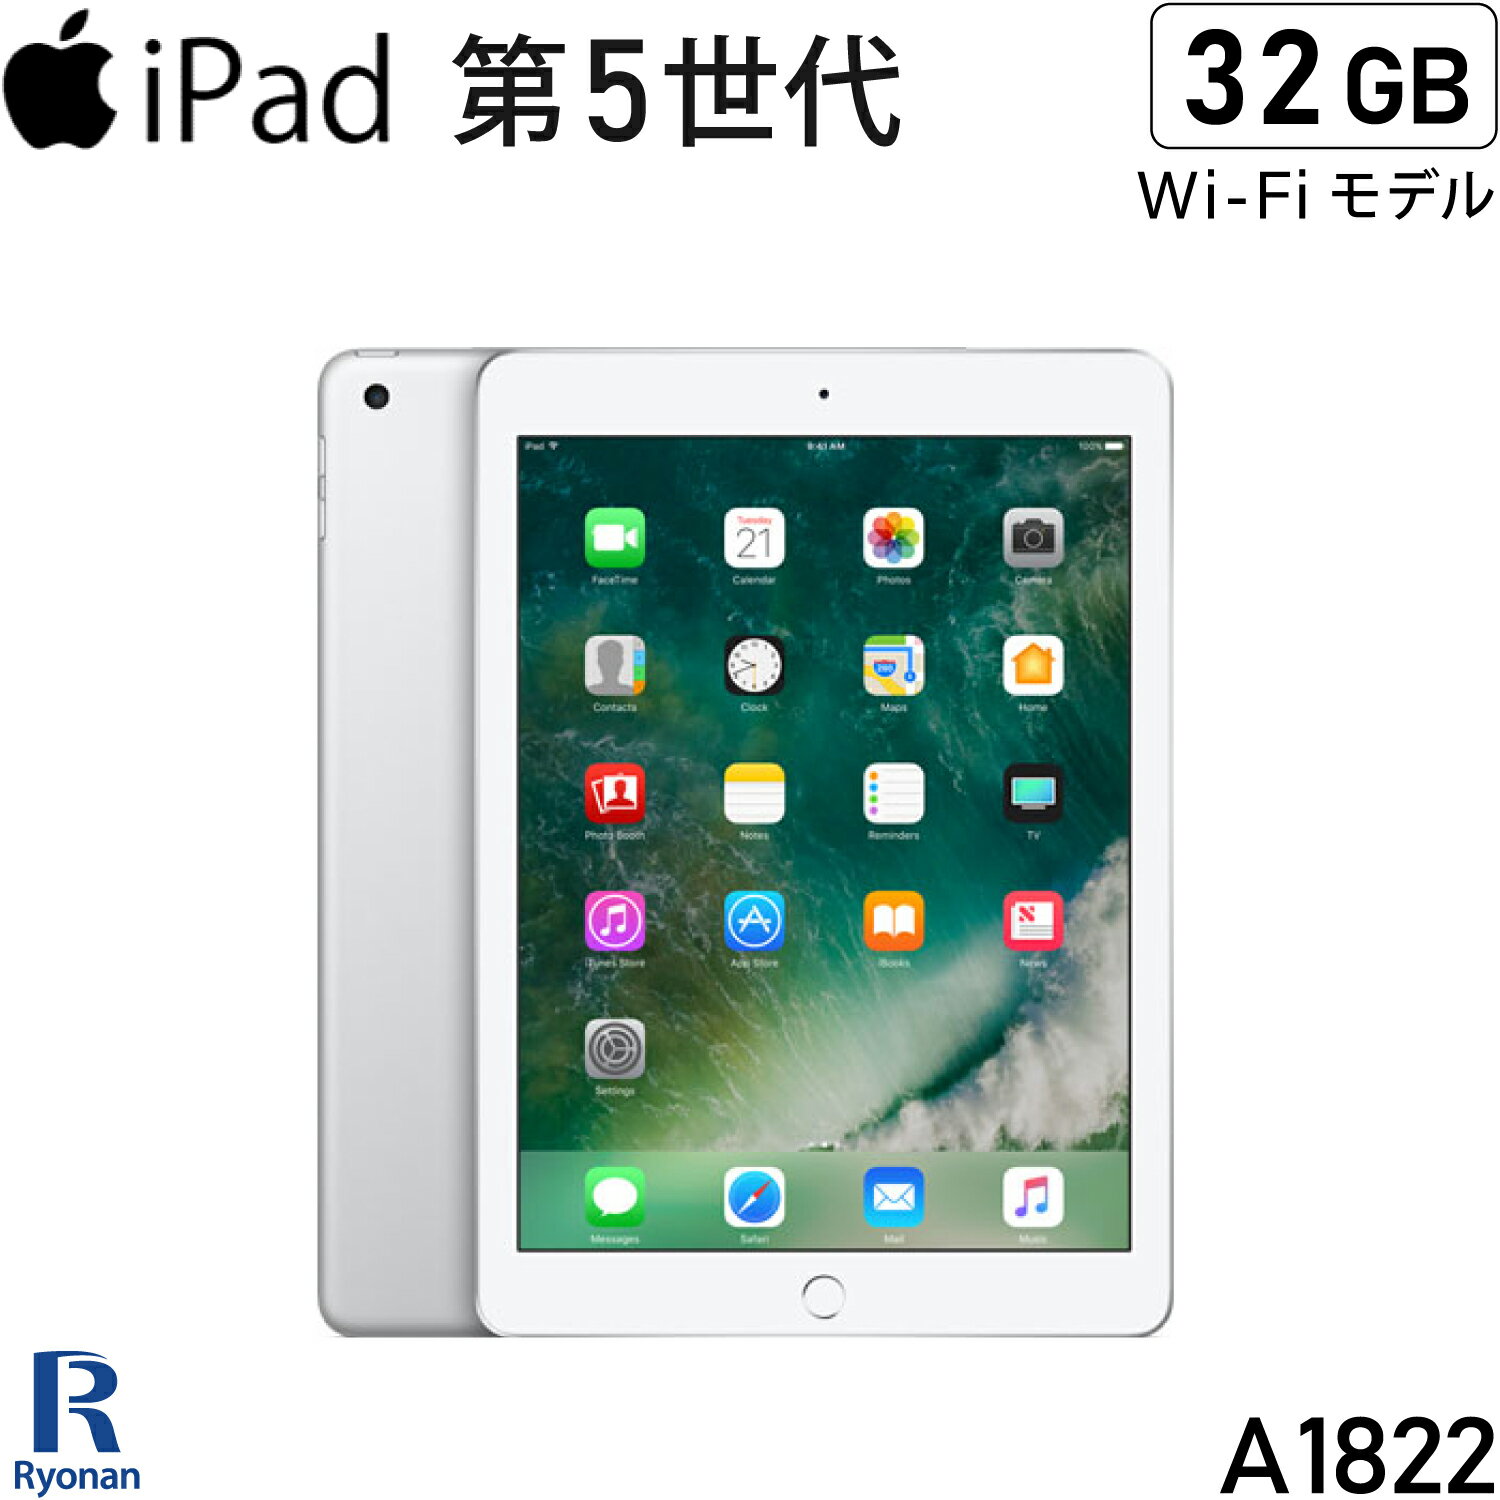 Apple iPad 第5世代 32GB 9.7インチ Retina ディスプレイタブレット 中古 アイパッド Wi-Fi モデル A1822【シルバー】【Wi-Fi】 【2017年モデル】【iPad5】